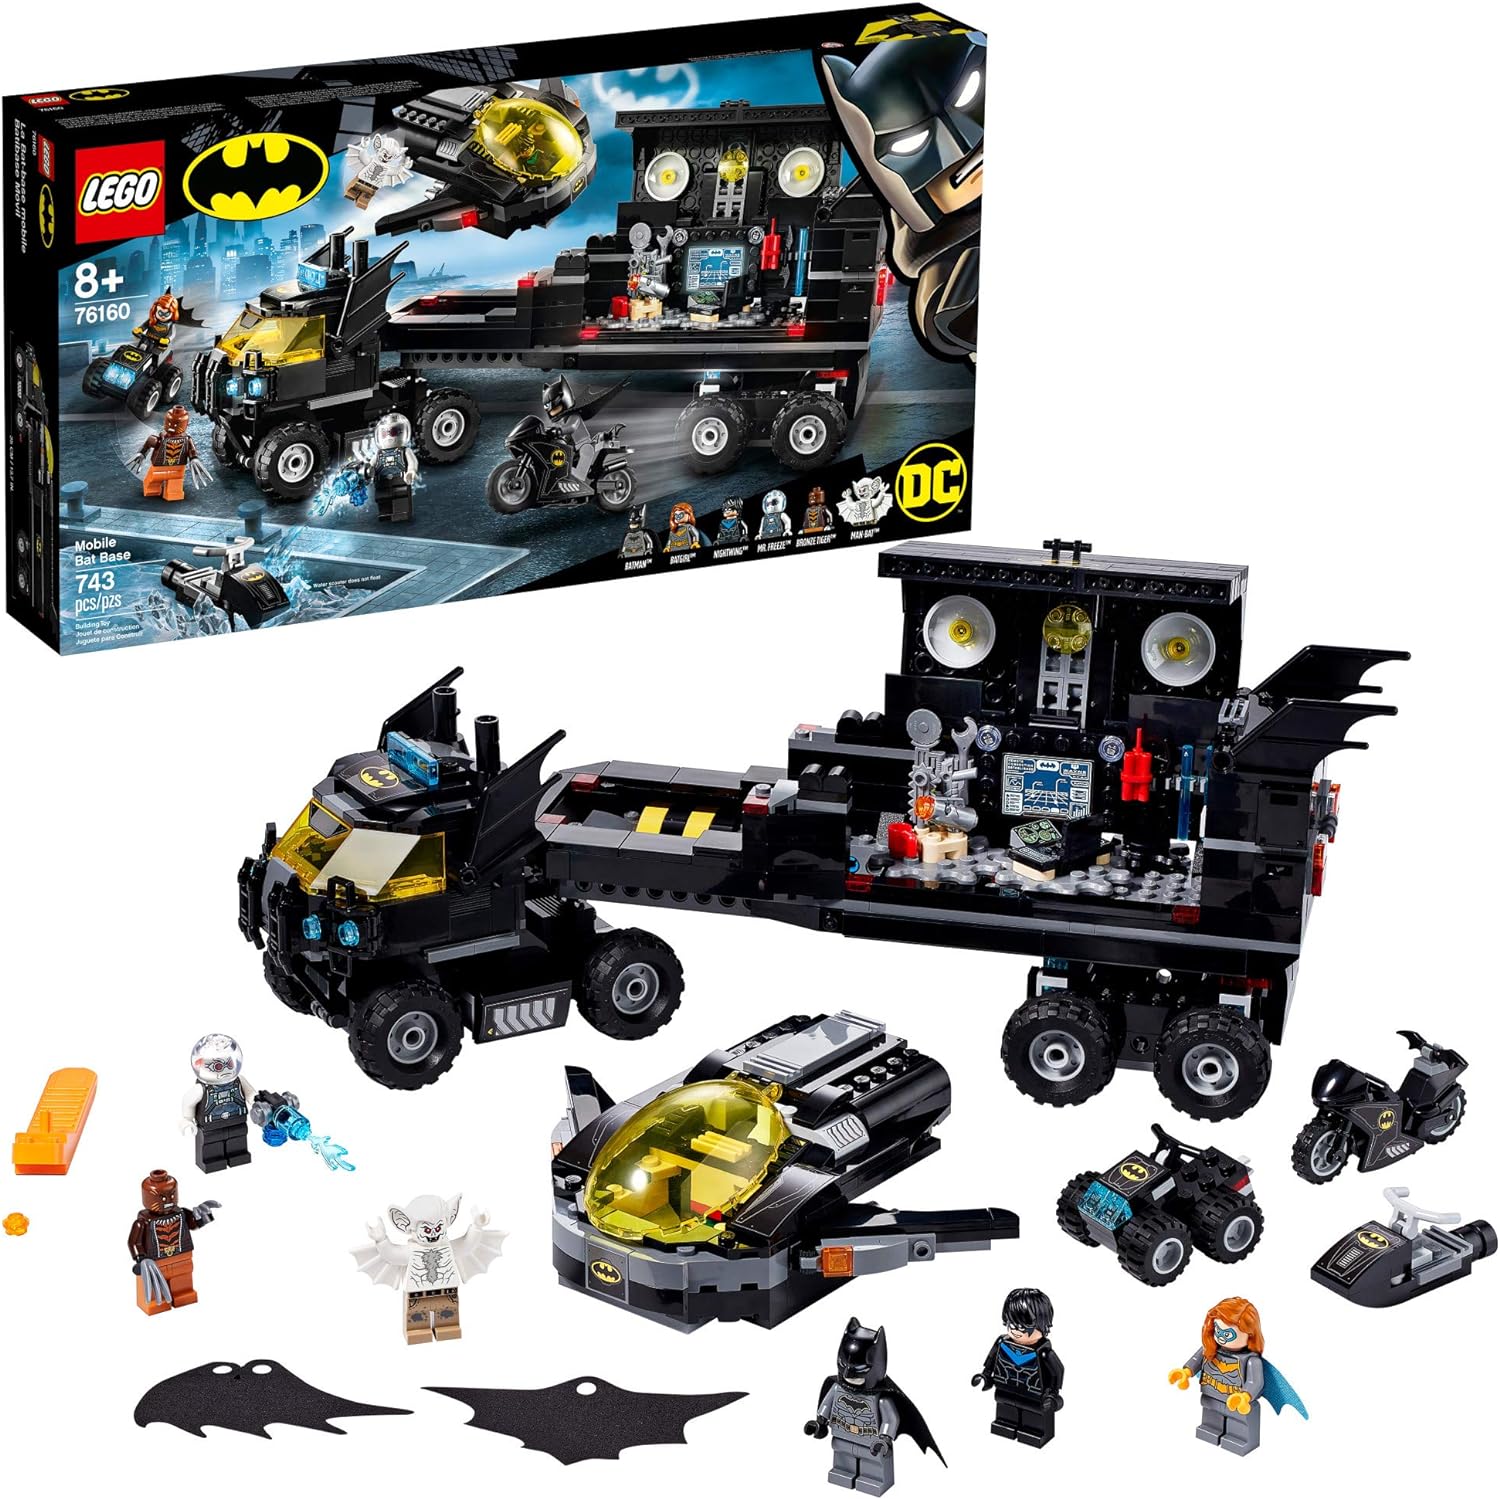 LEGO 76160 DC Mobile Bat Base 76160 Batman Building Toy, Gotham City Batcave Playset and Action Minifigures (743 Pieces)